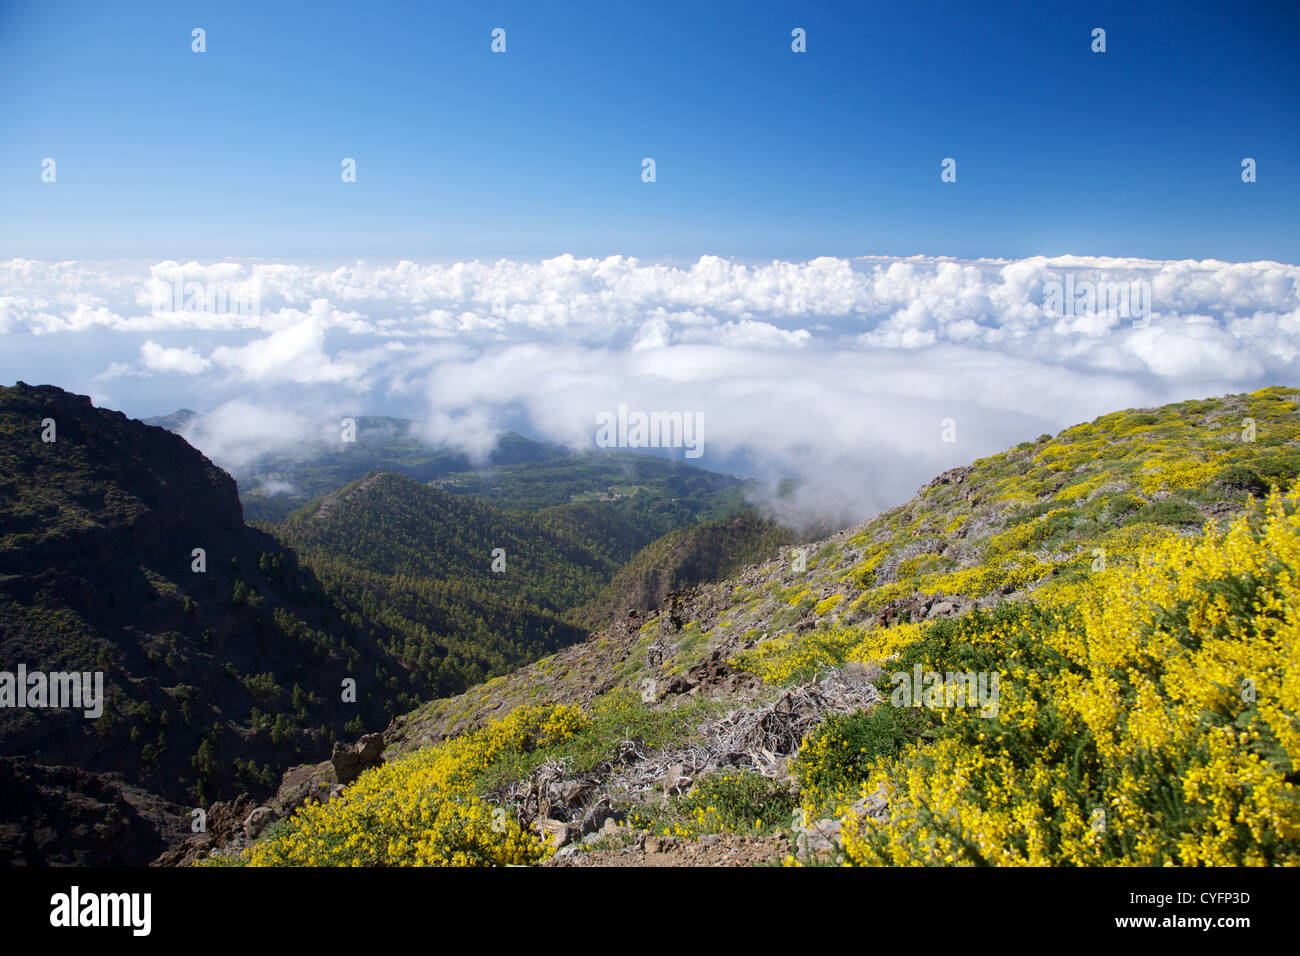 Des paysages de La Palma dans les Îles Canaries Espagne Banque D'Images